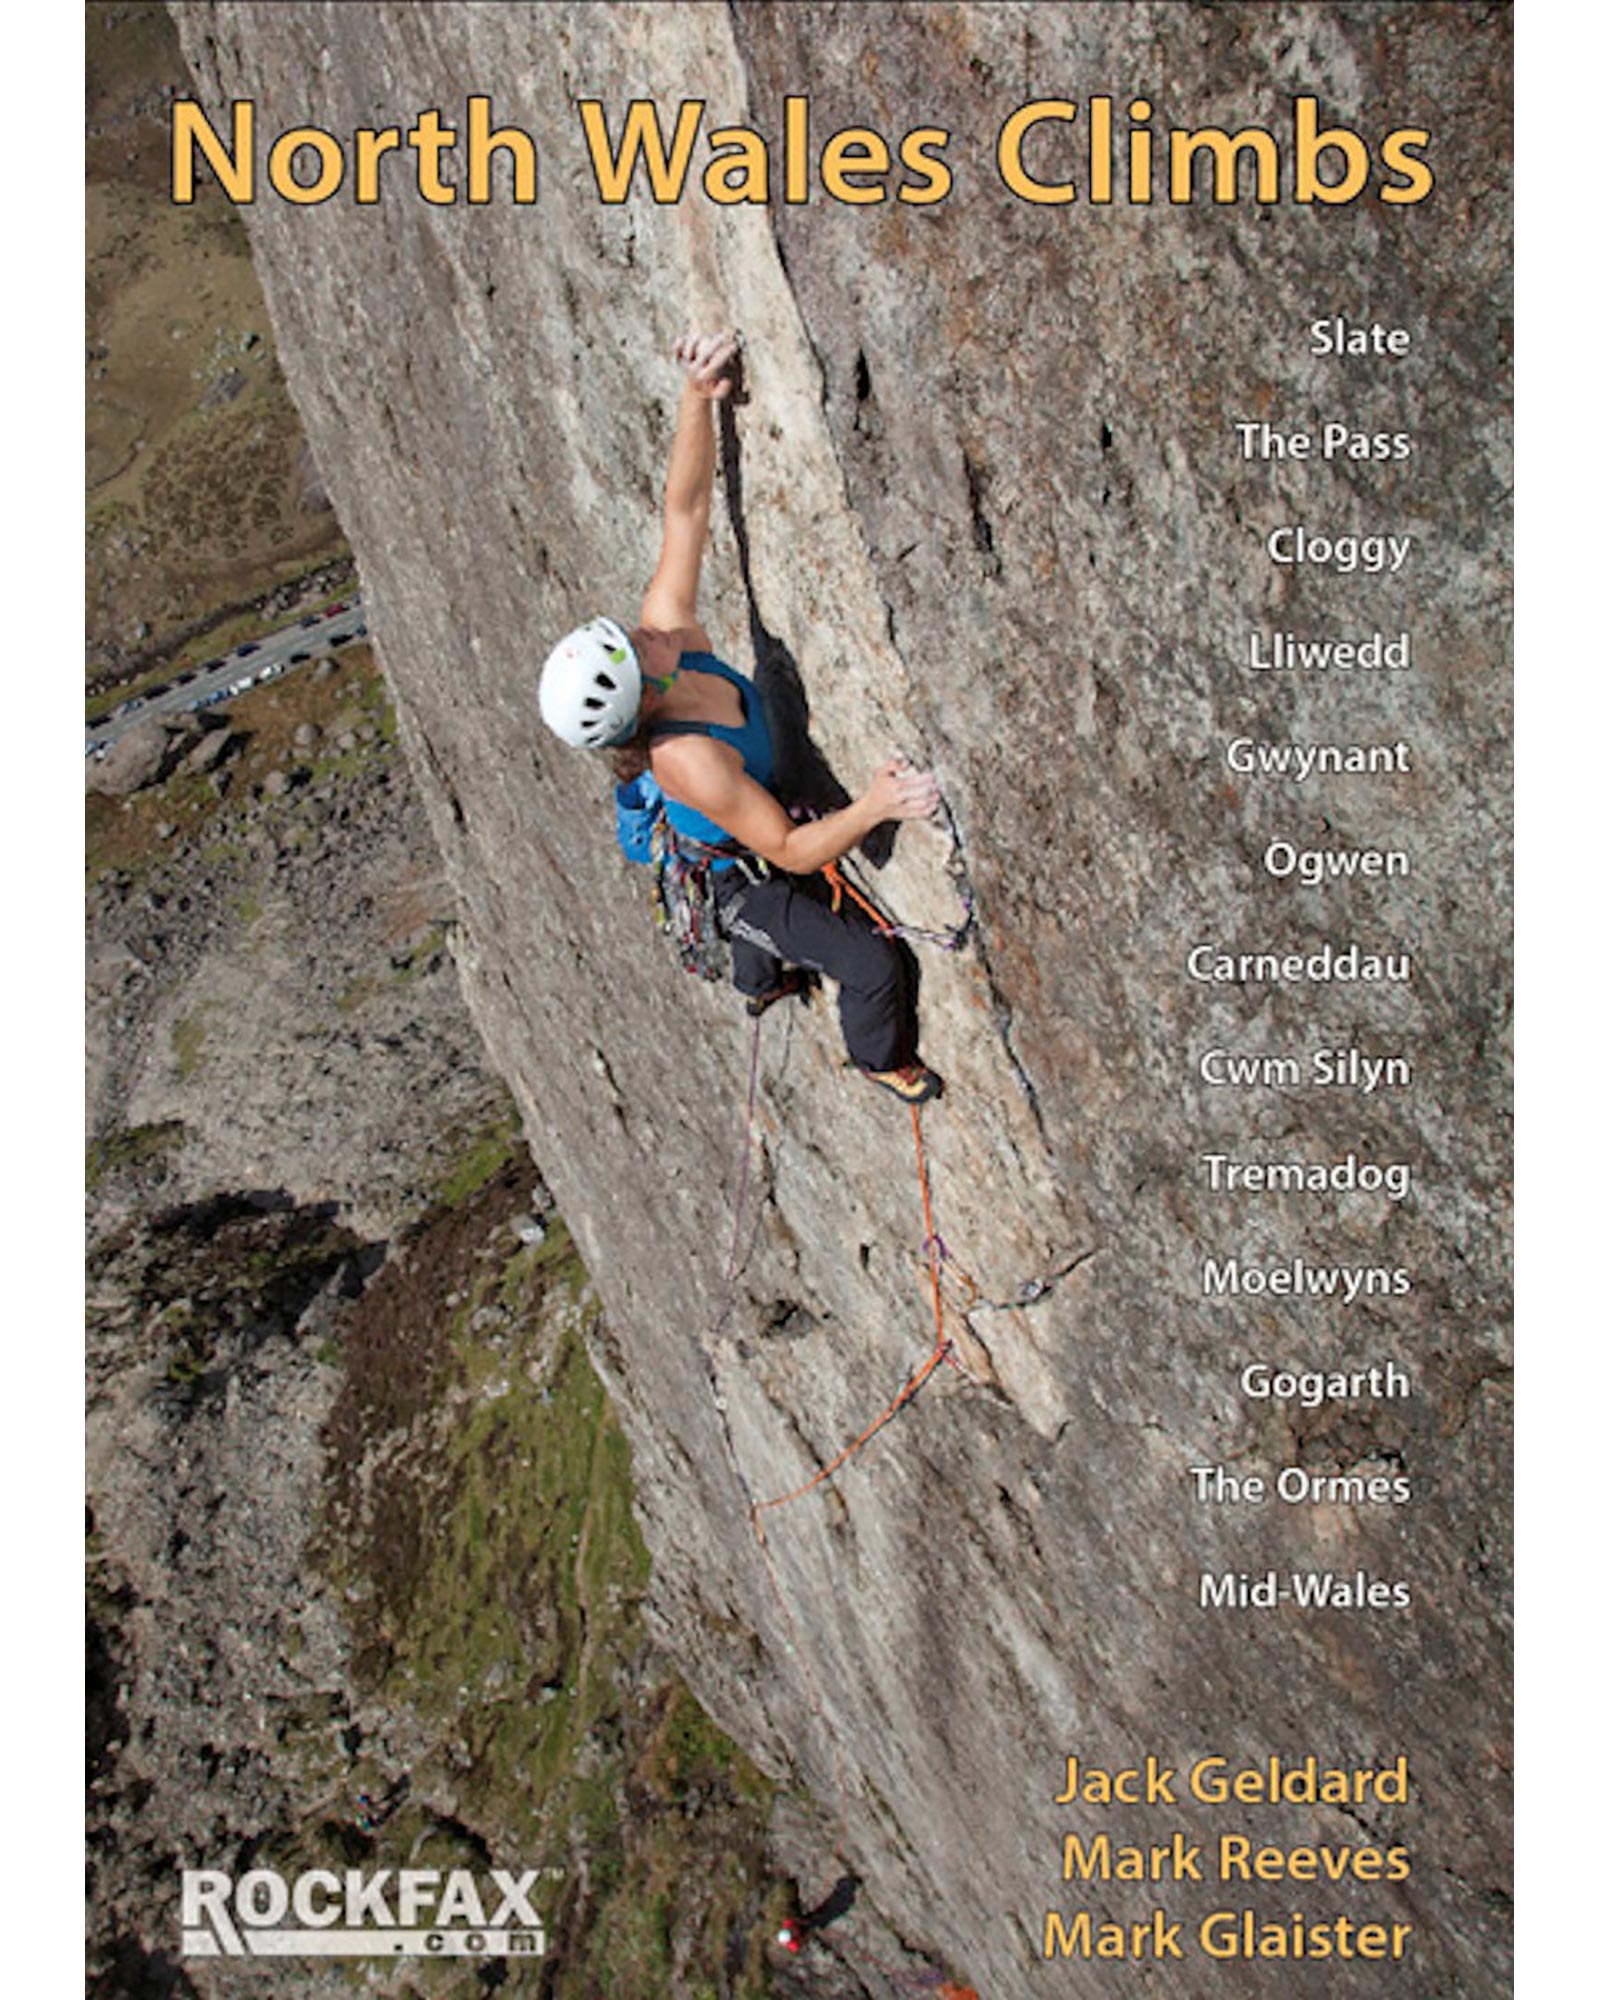 Rockfax North Wales Climbs Guide Book